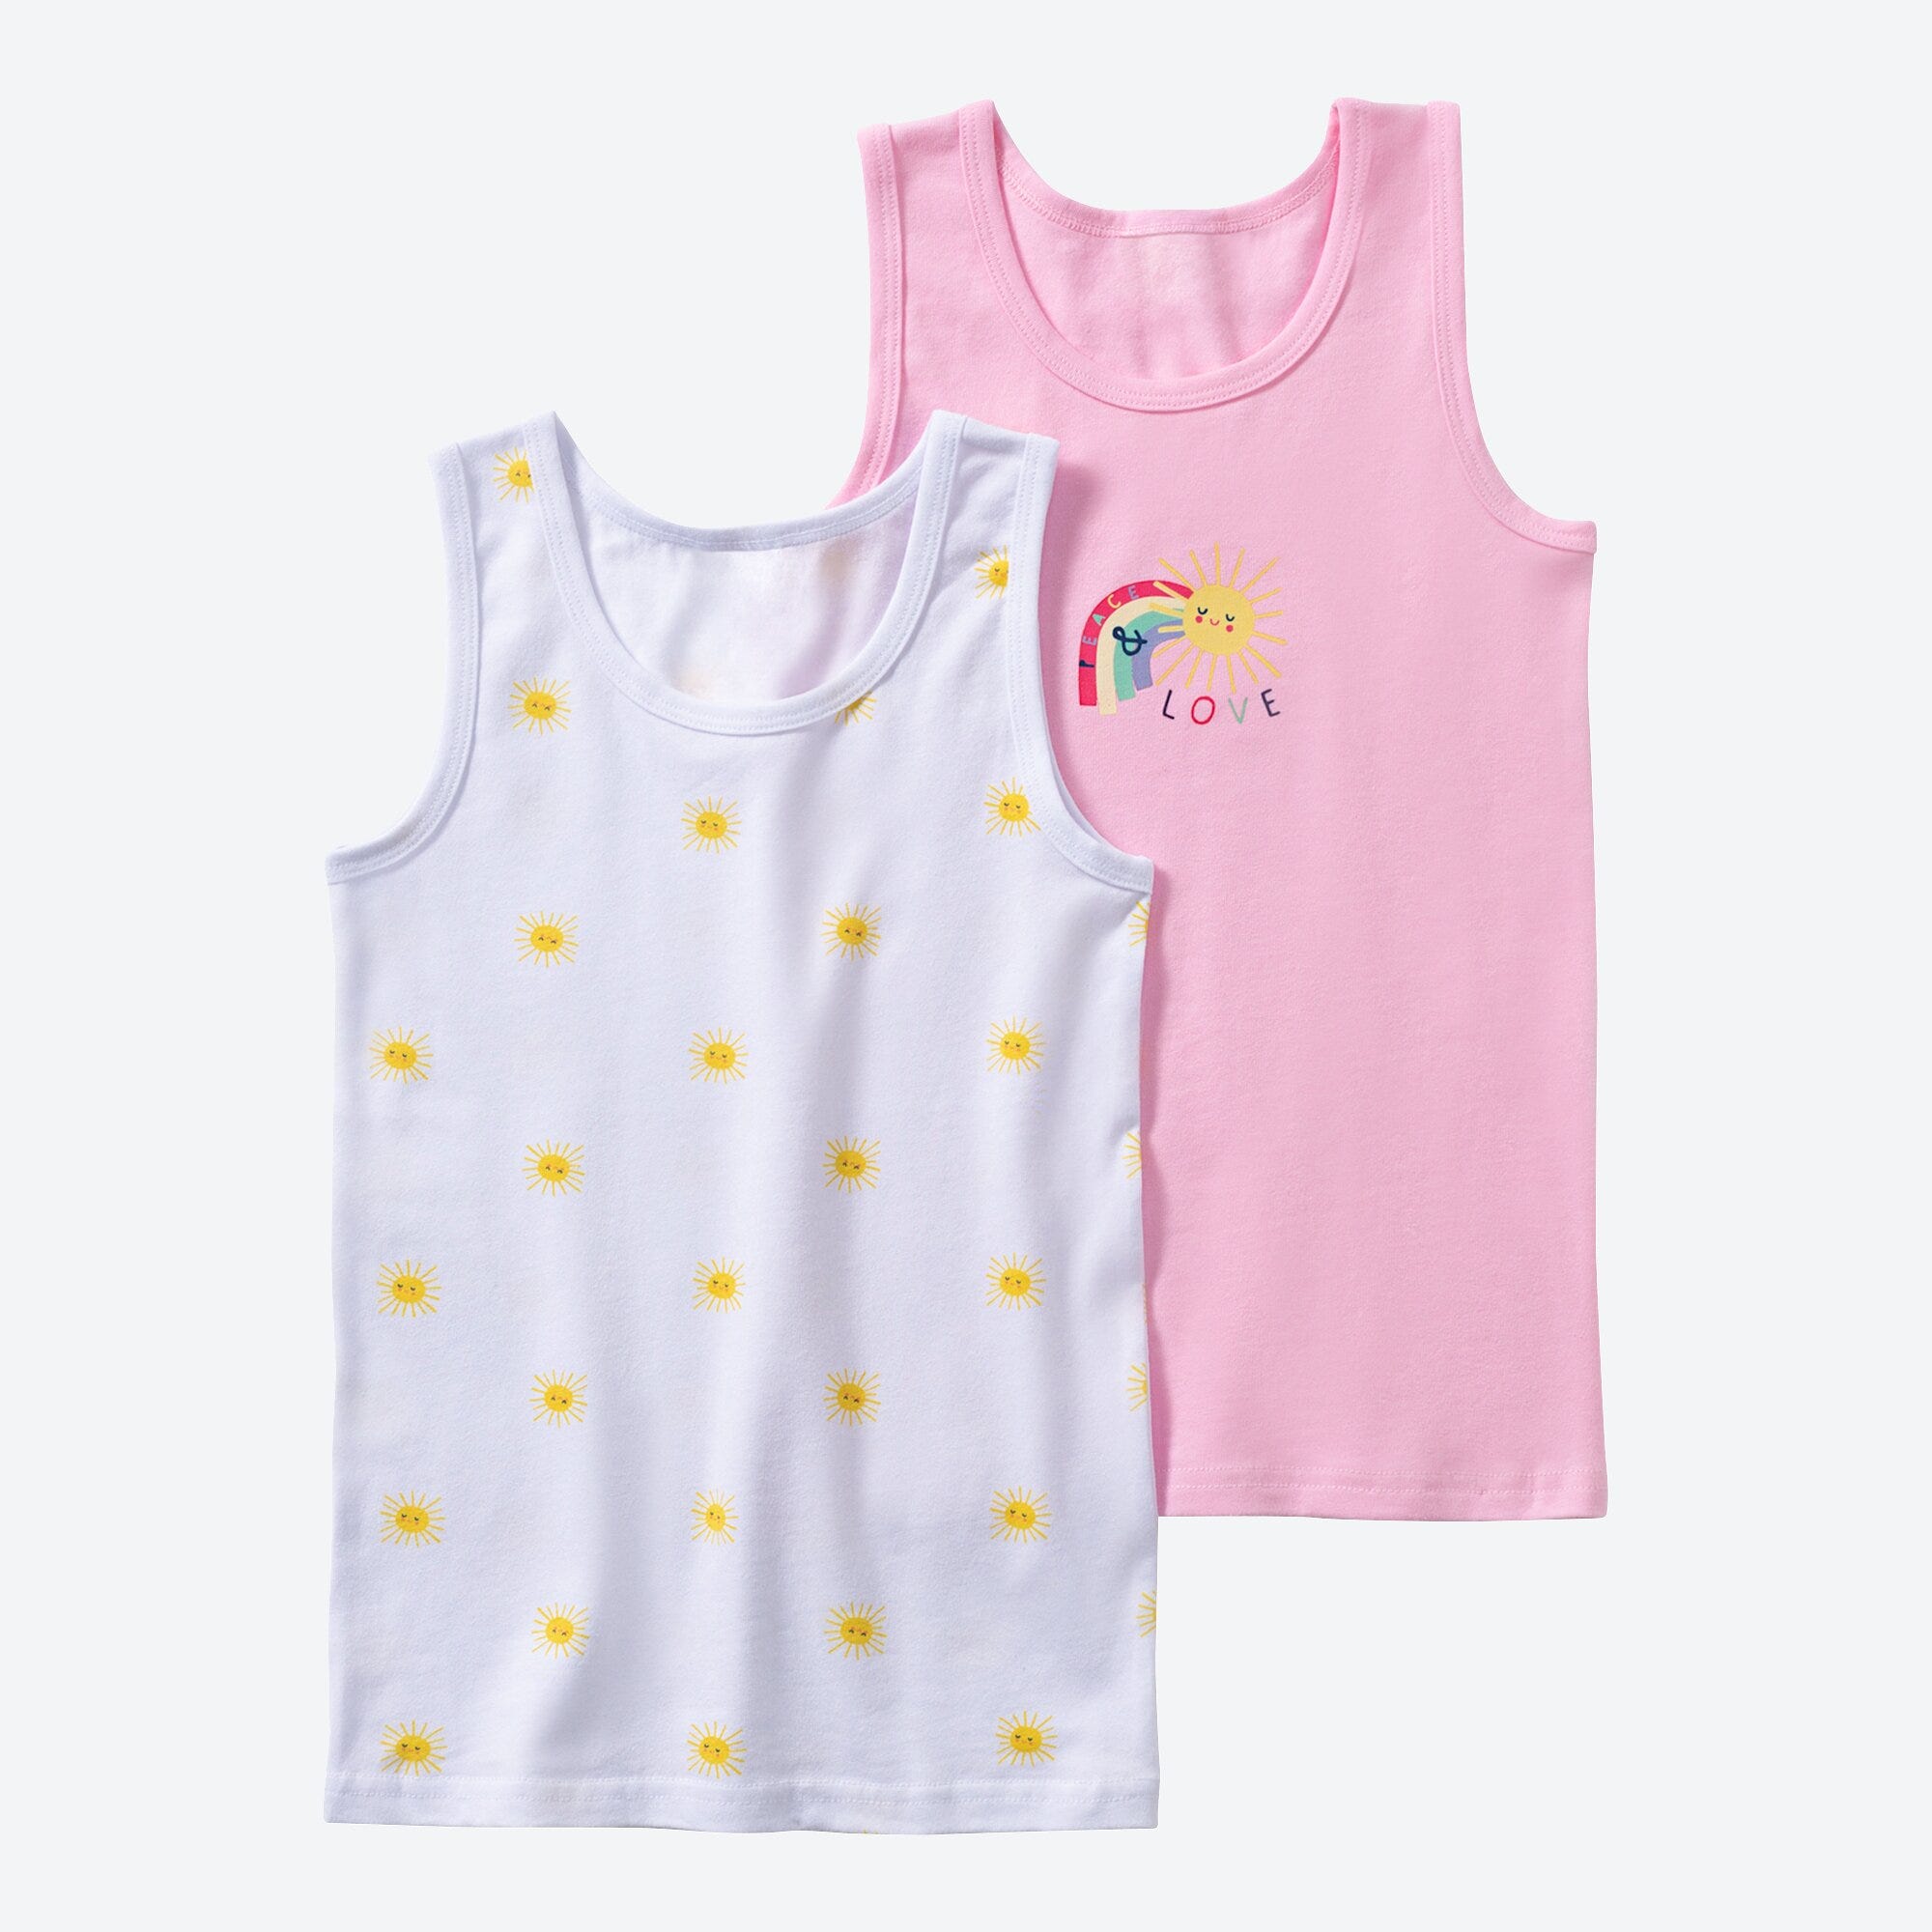 Mädchen-Unterhemd mit Sonnen-Muster, 2er-Pack